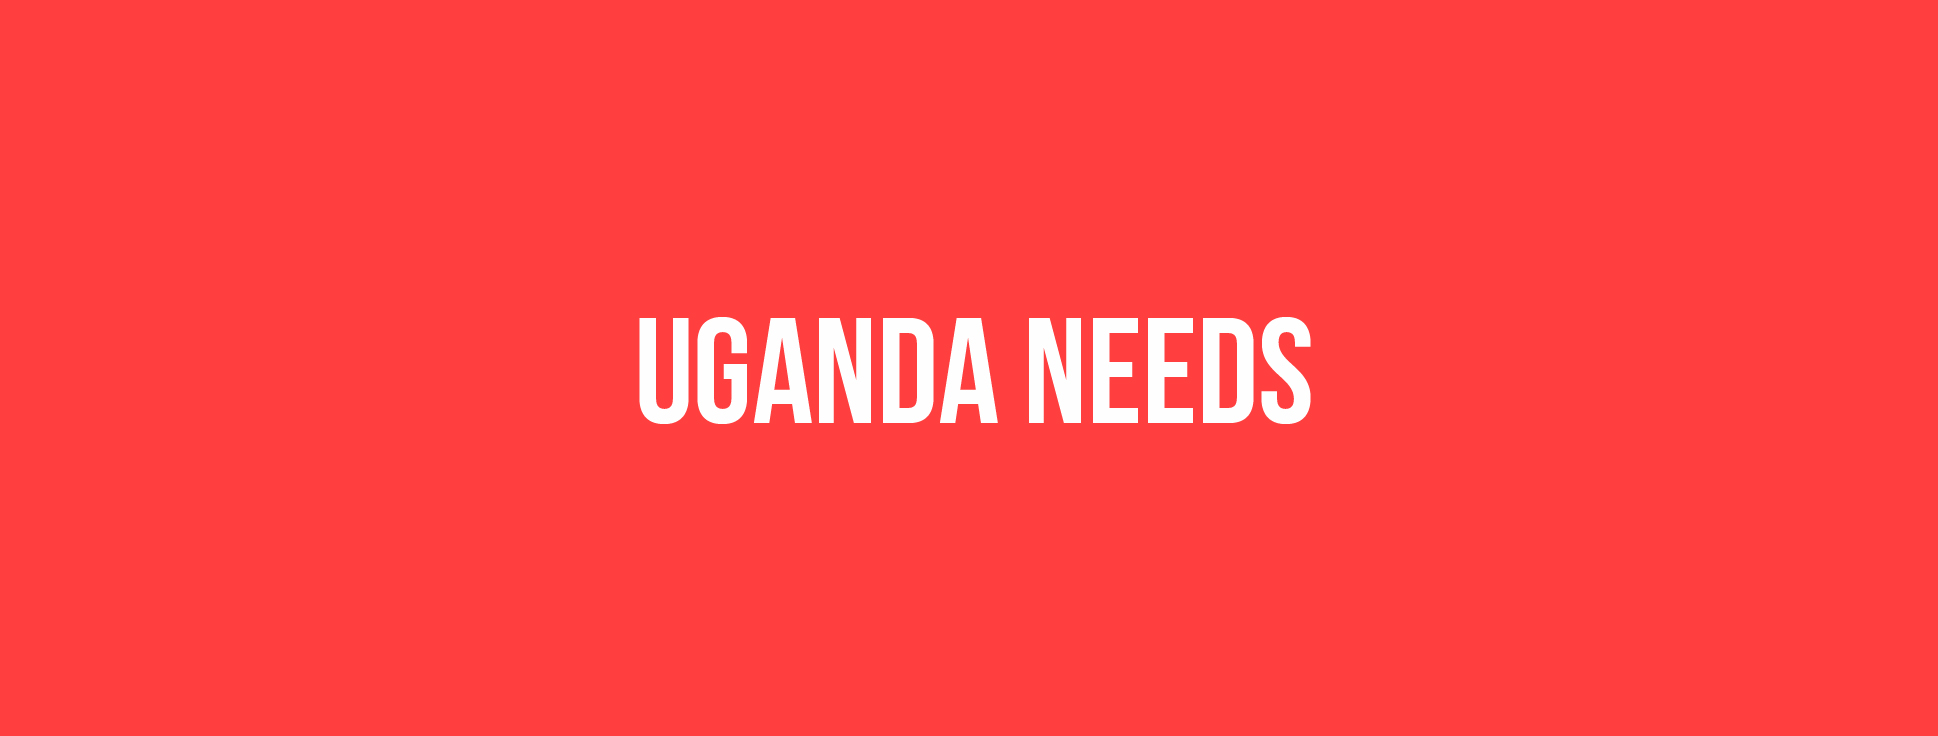 Uganda Needs